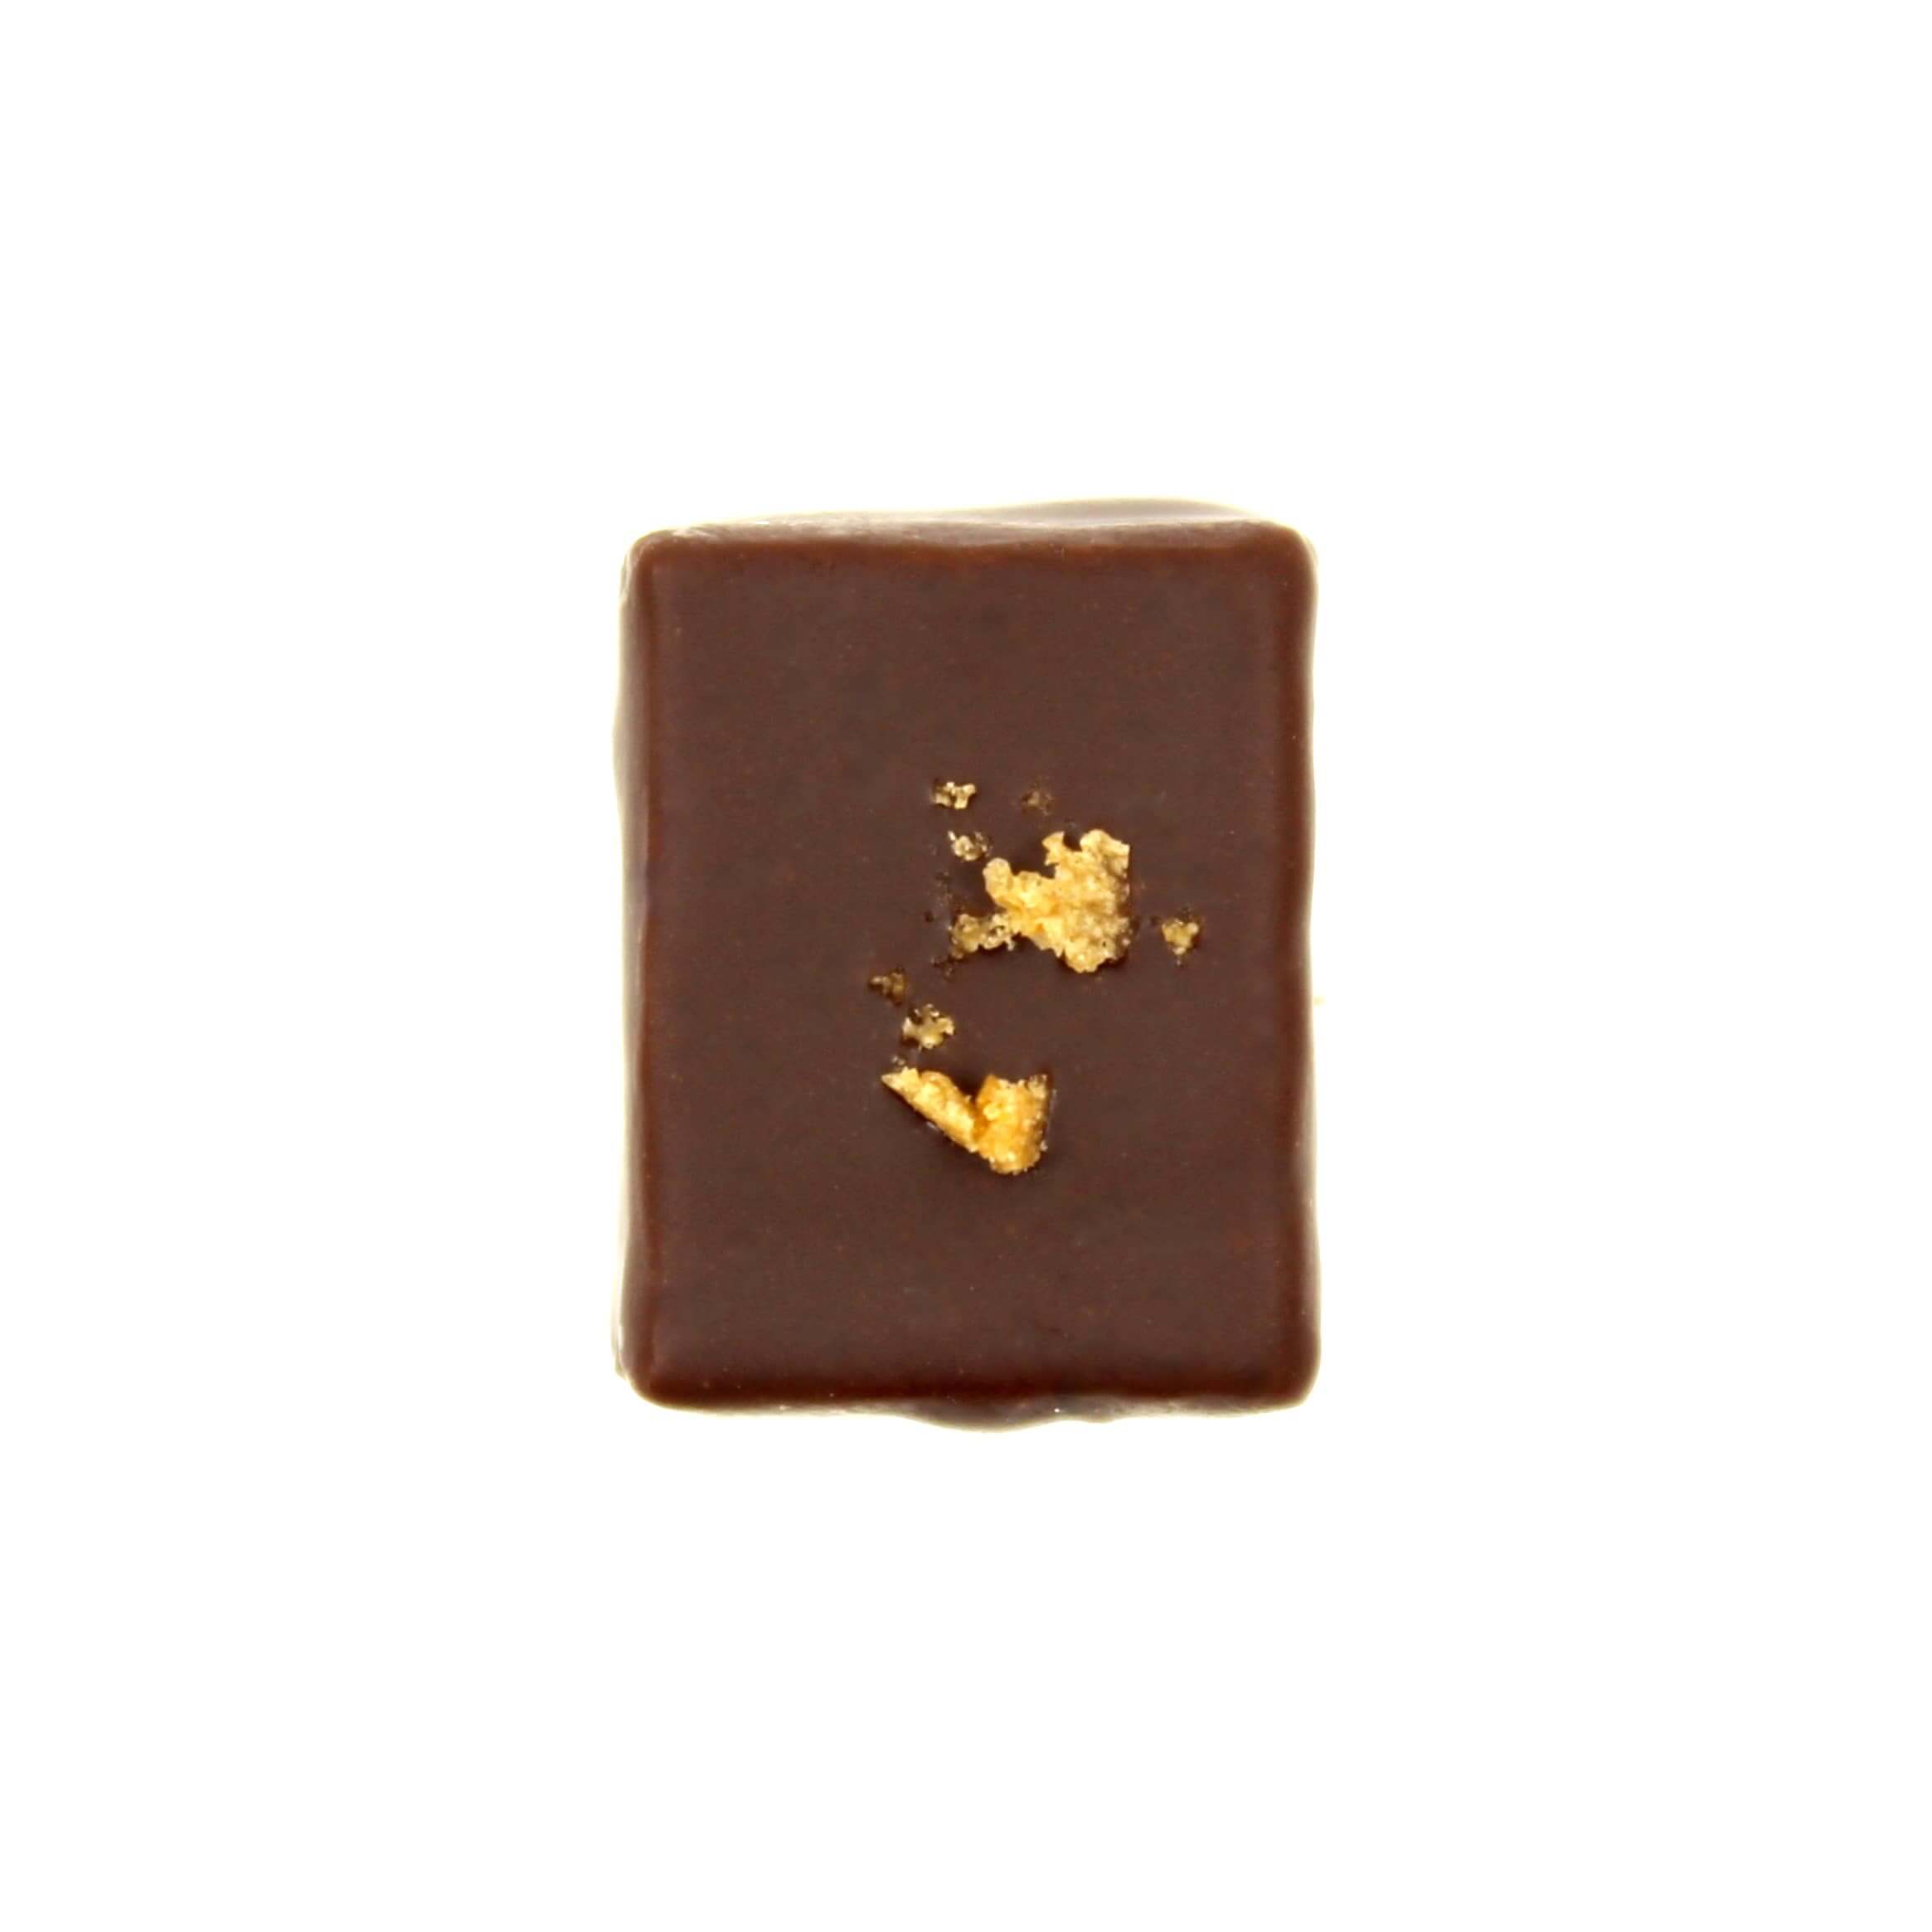 hilde devolder chocolatier hazelnut eclat d'or